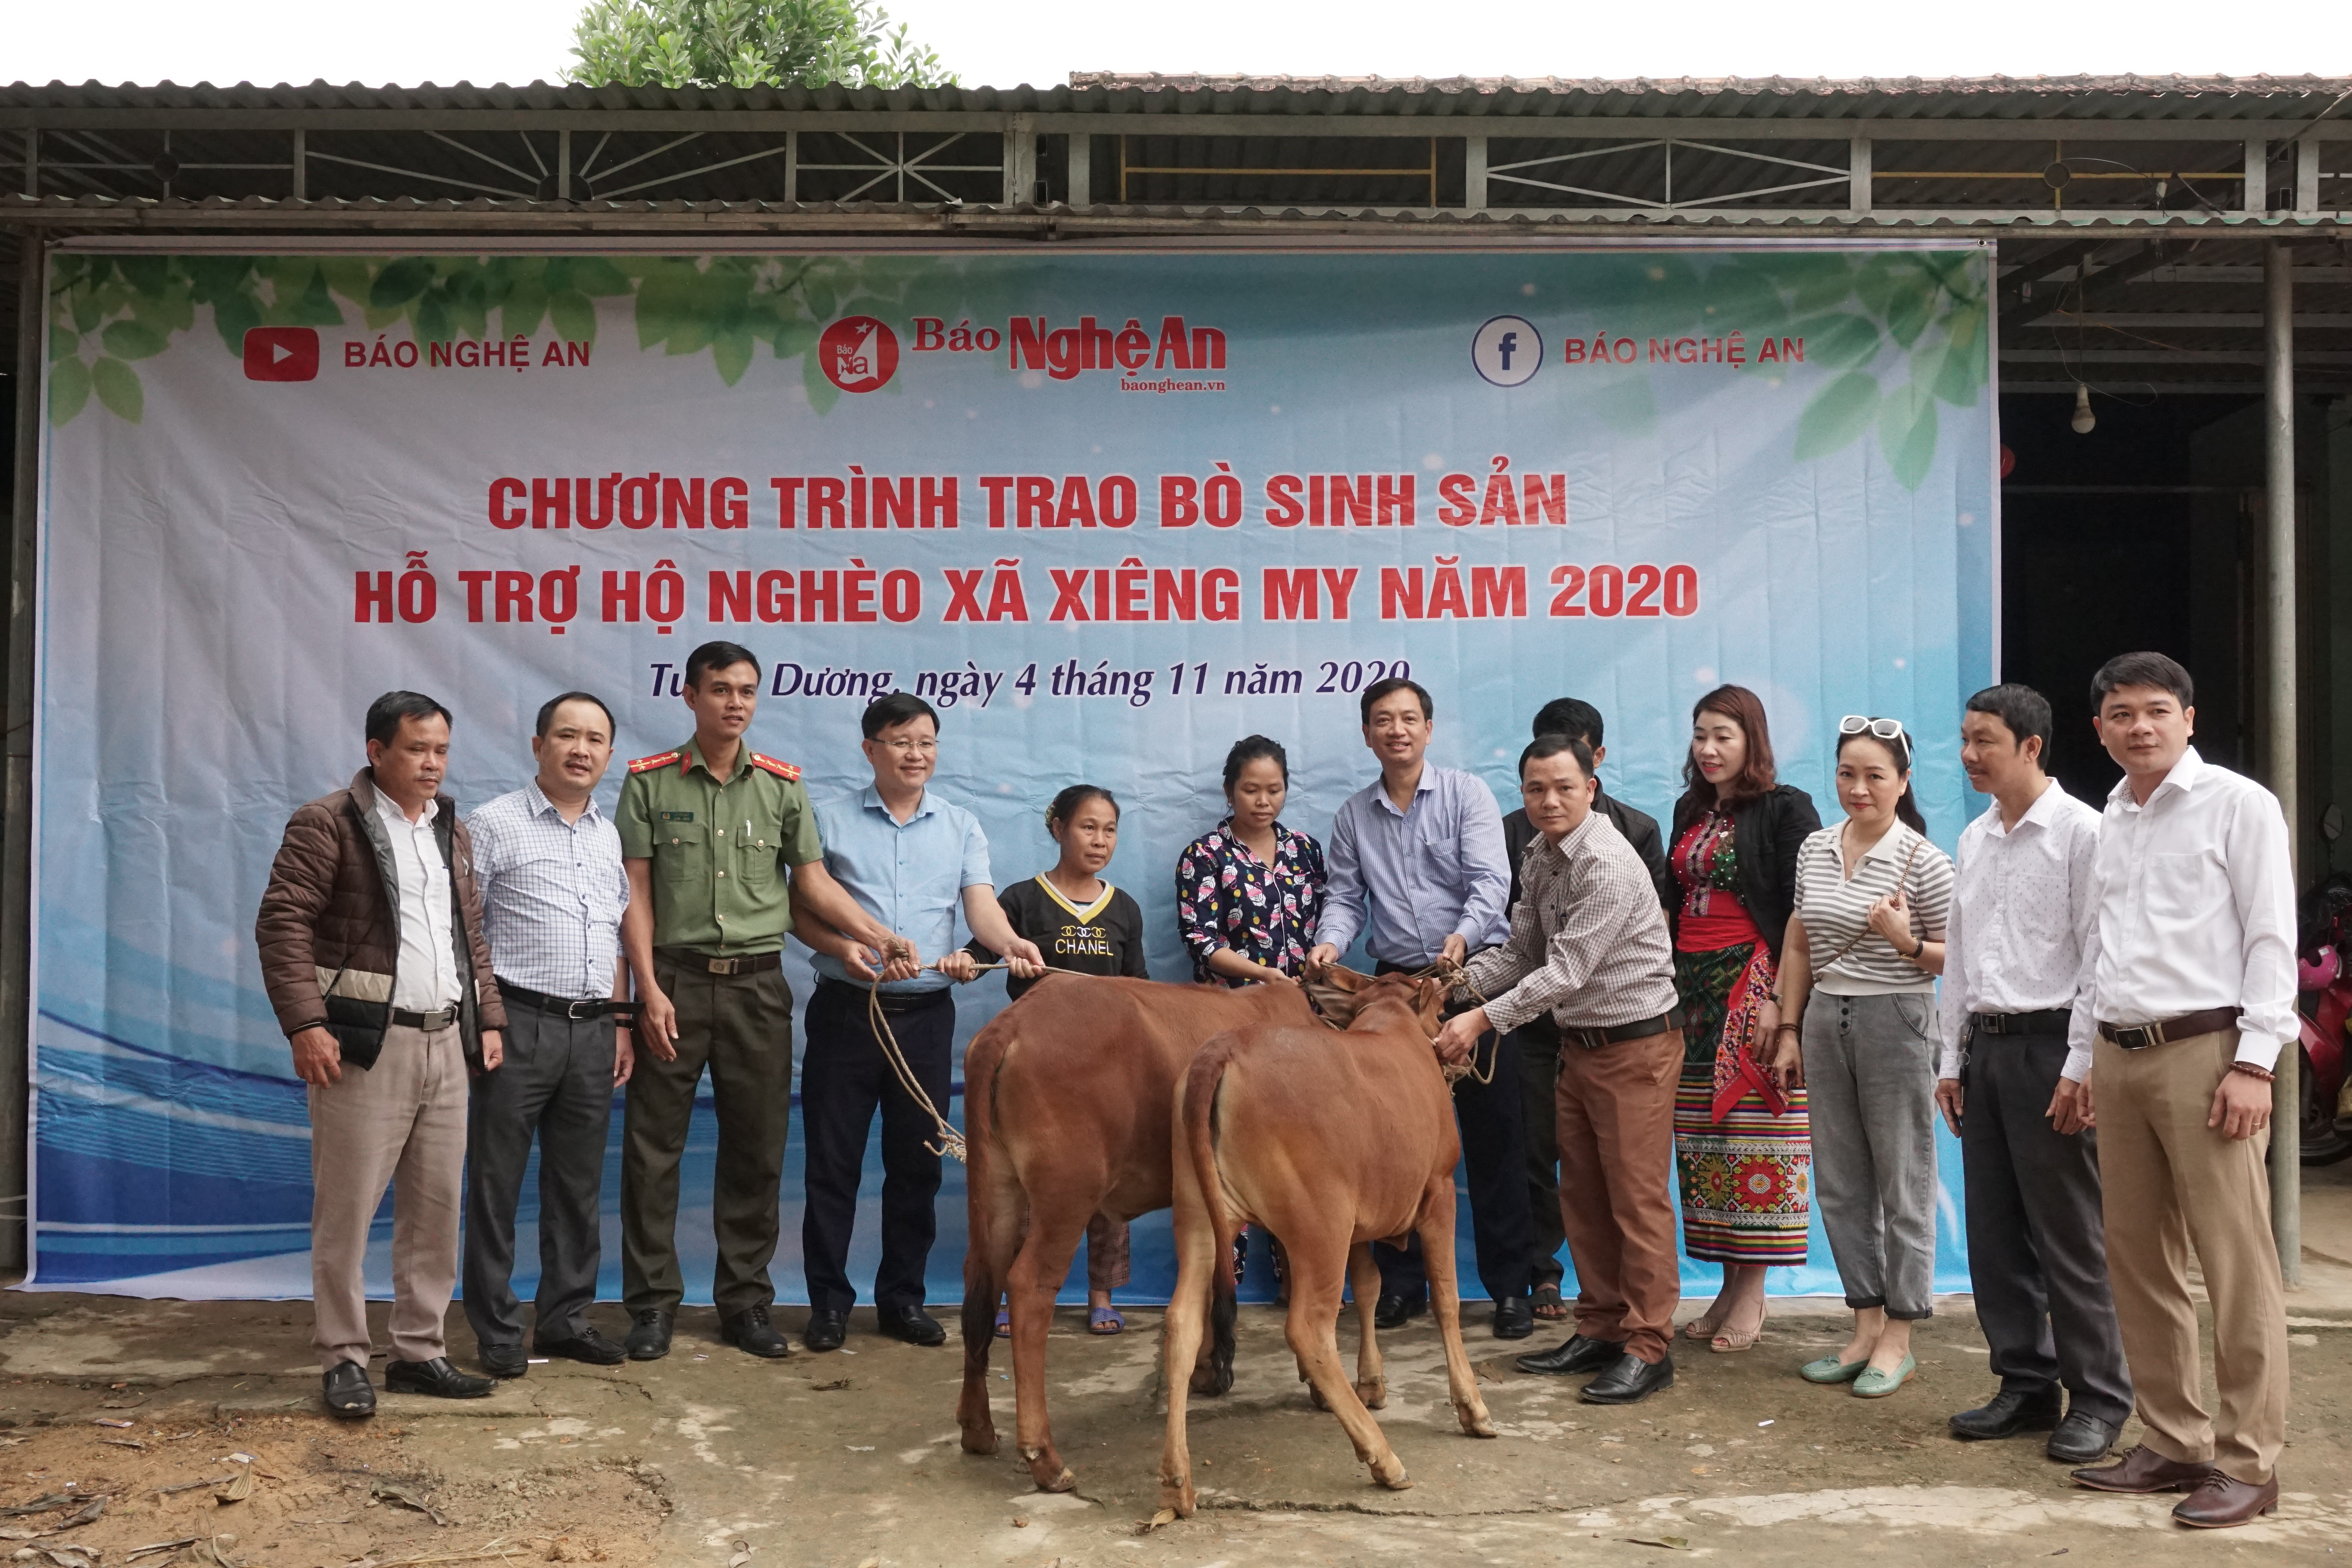 Báo Nghệ An trao tặng bò sinh sản cho hộ nghèo tại bản Khe Quỳnh, Xã Xiêng Mỹ, Tương Dương. Ảnh: Tùng Linh